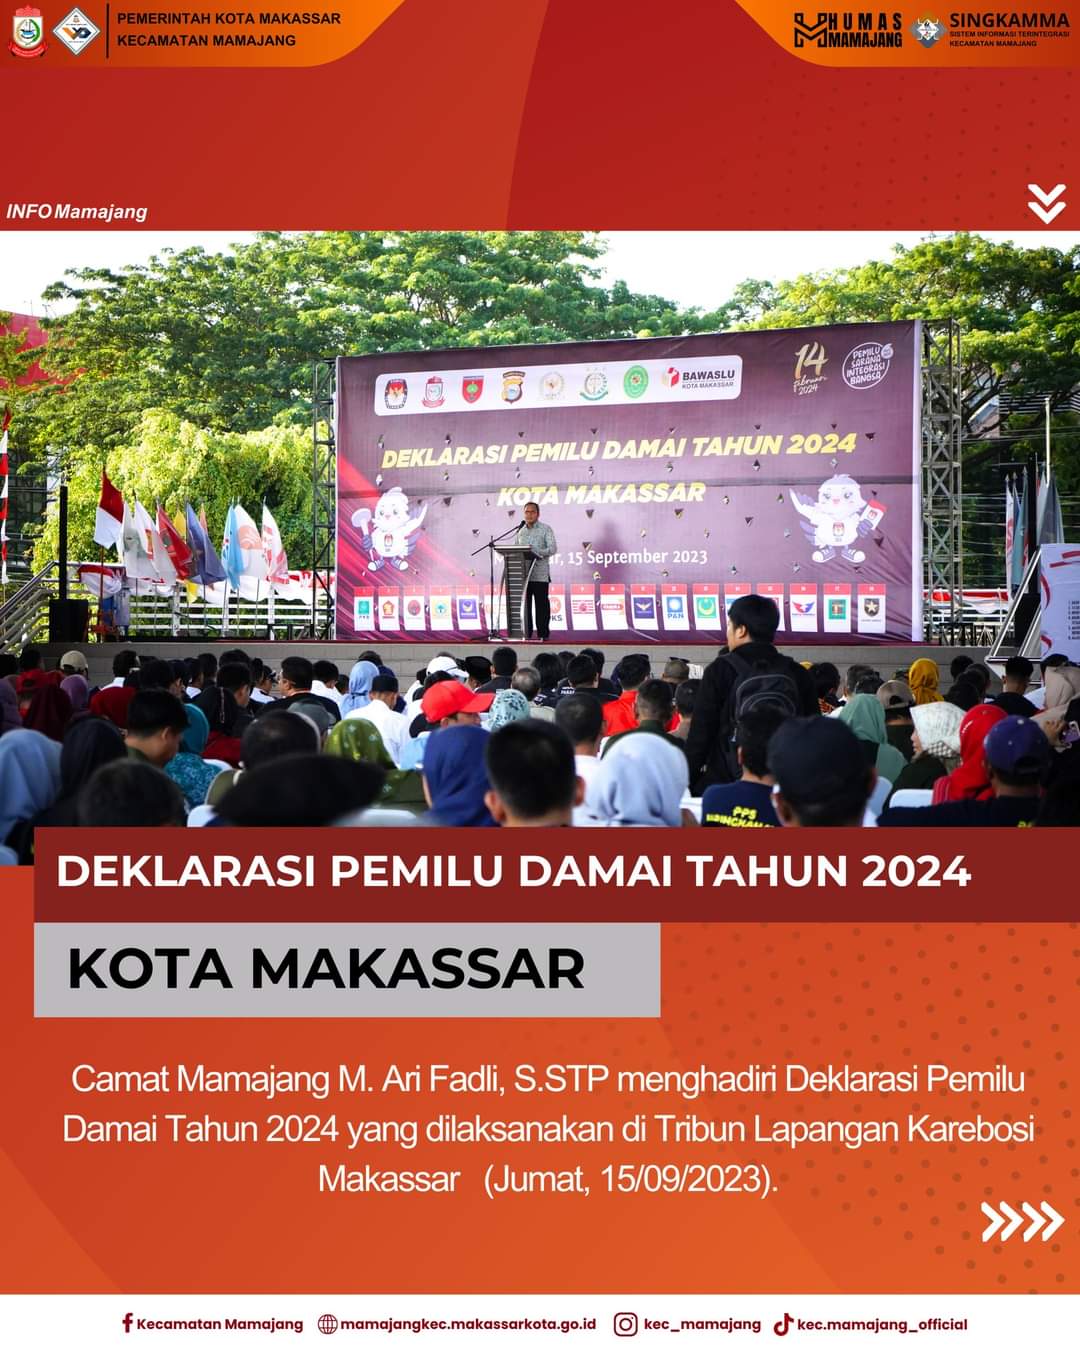 Gambar Camat Mamajang M. Ari Fadli S.STP menghadiri Deklarasi Pemilu Damai Tahun 2024